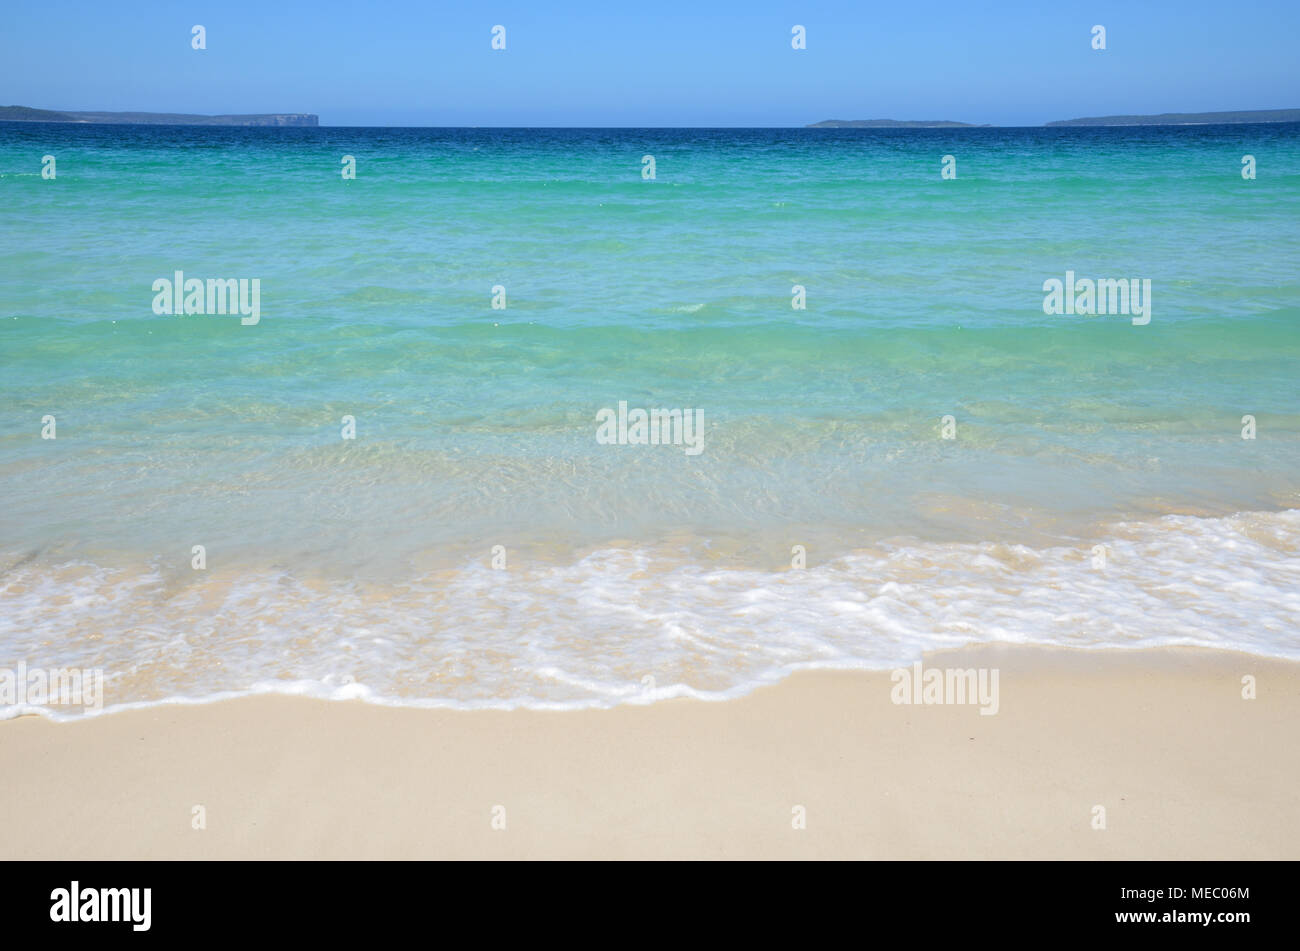 Vista panoramica dalla spiaggia della baia di fronte al promontorio. Beach scene oceano di lappatura sulla spiaggia con acque calme. Foto Stock